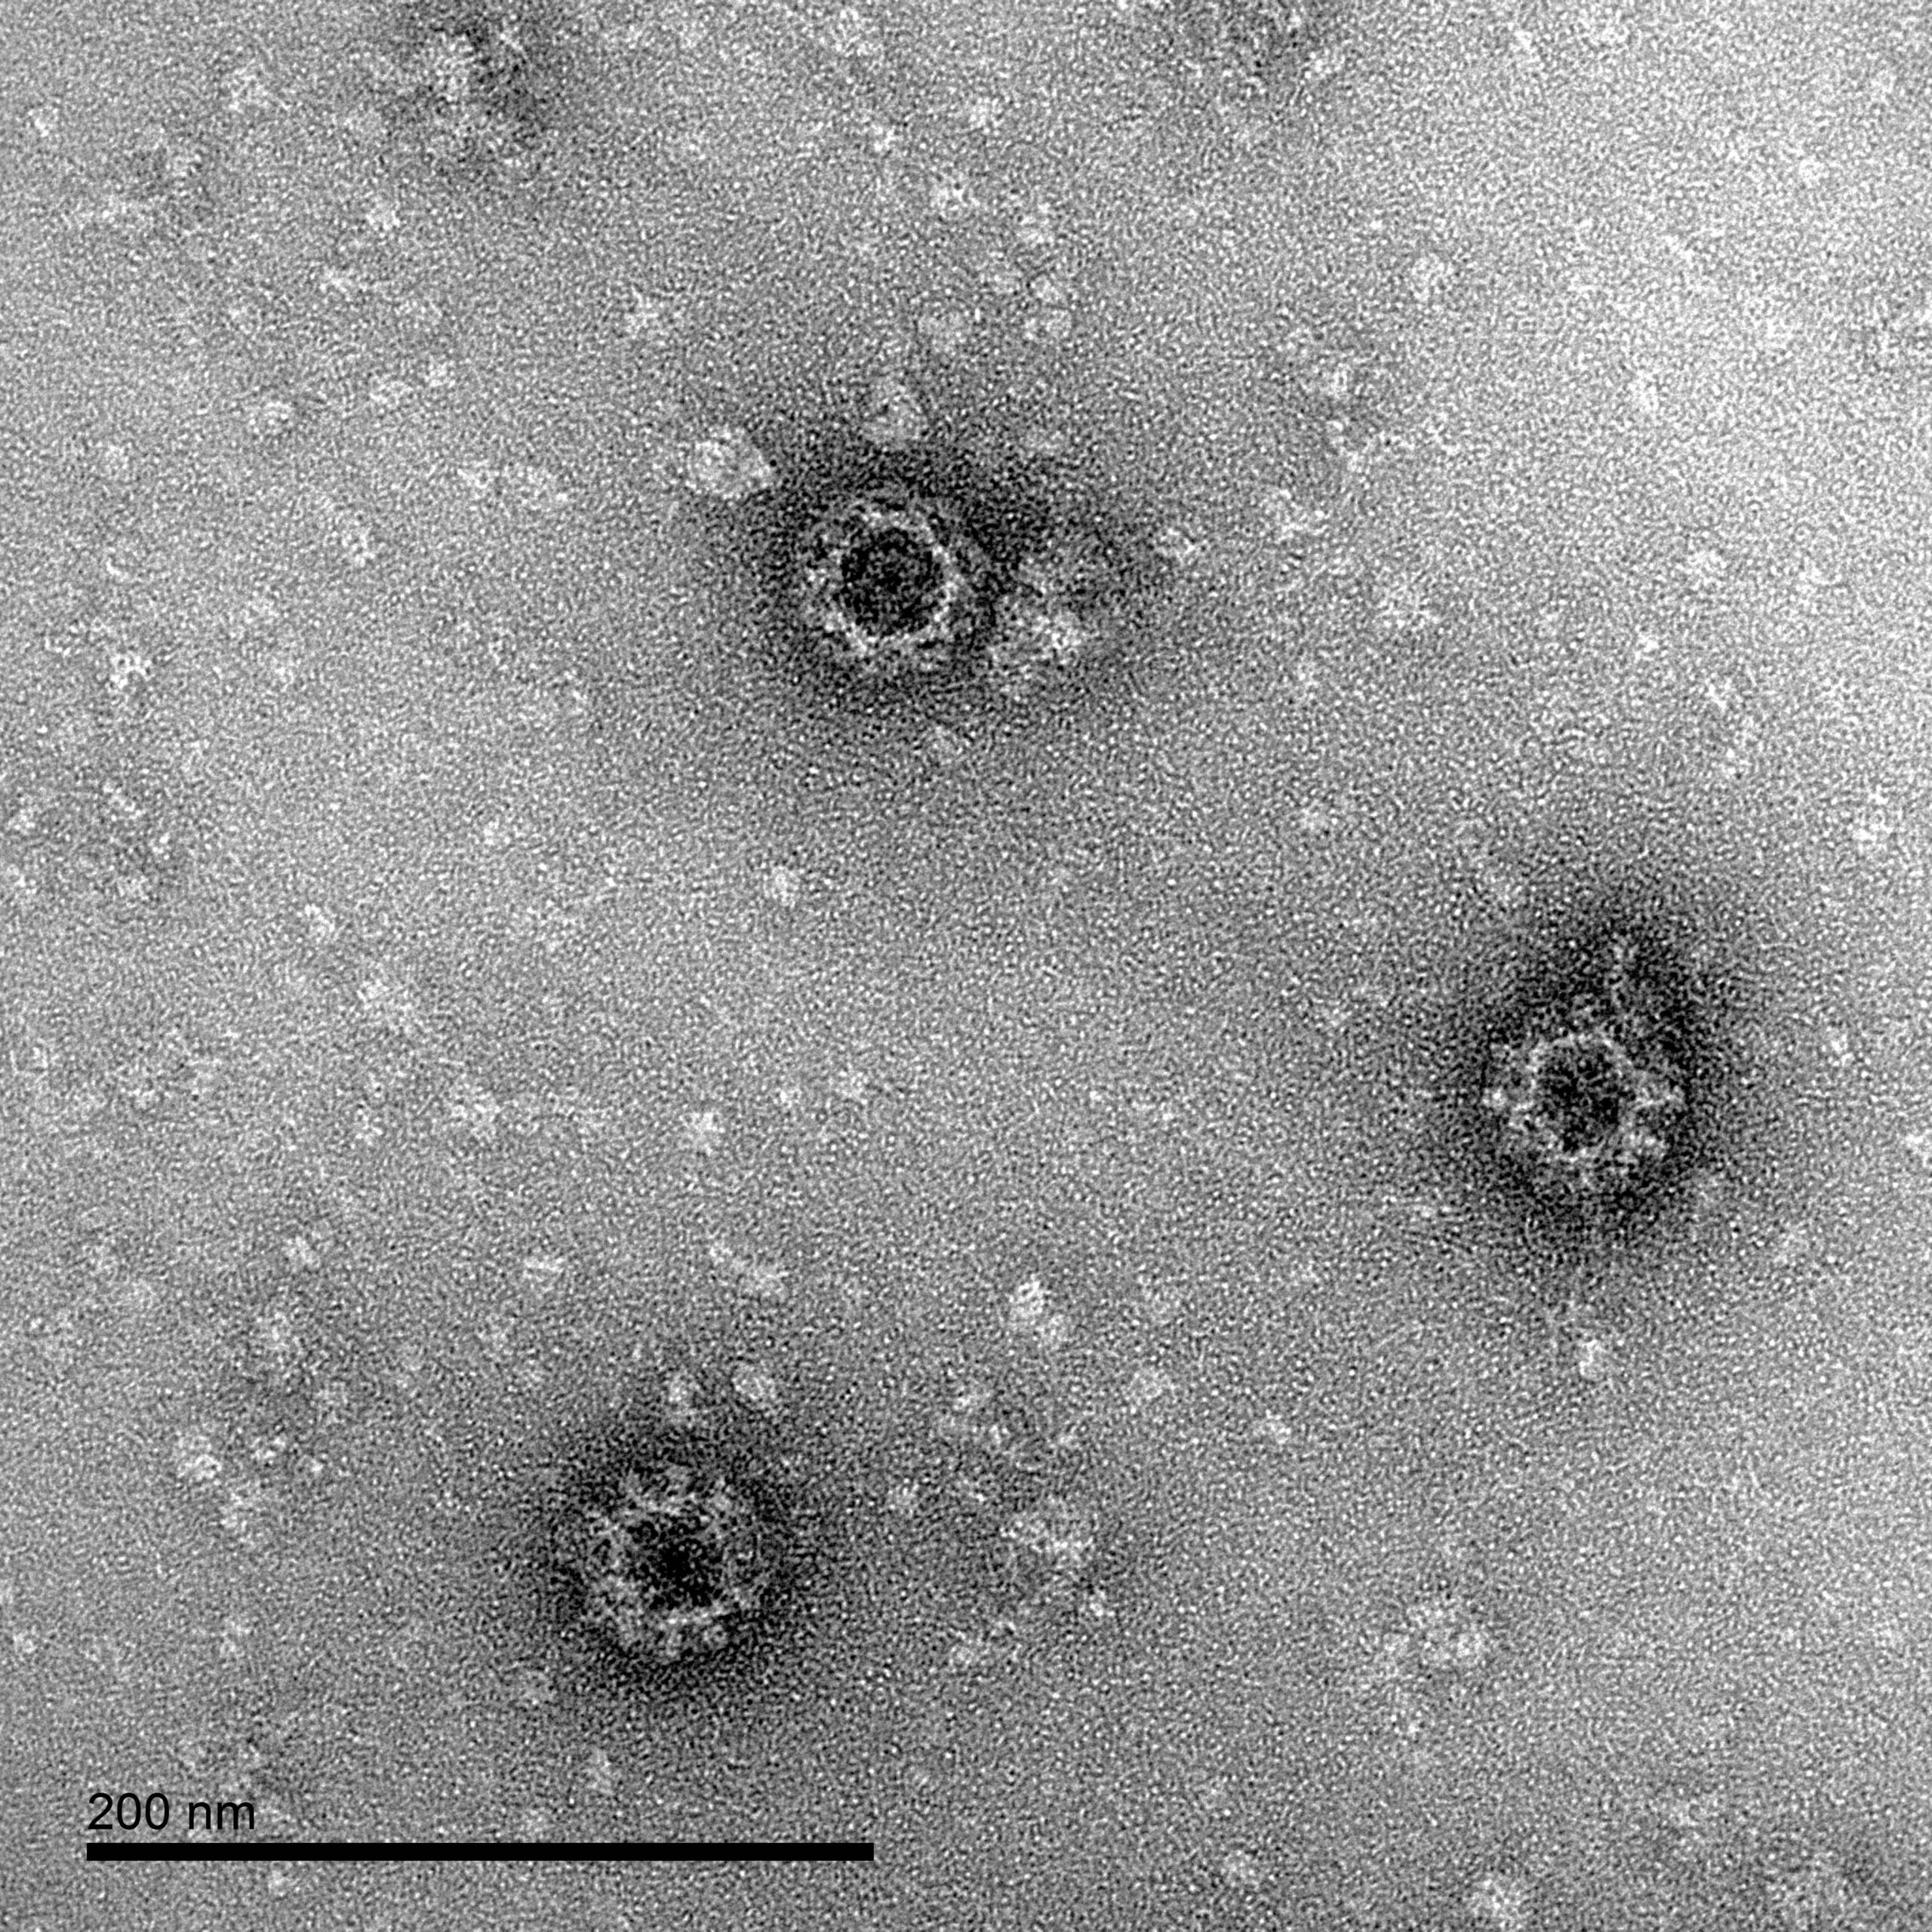 Norovirus GI.1 VLP